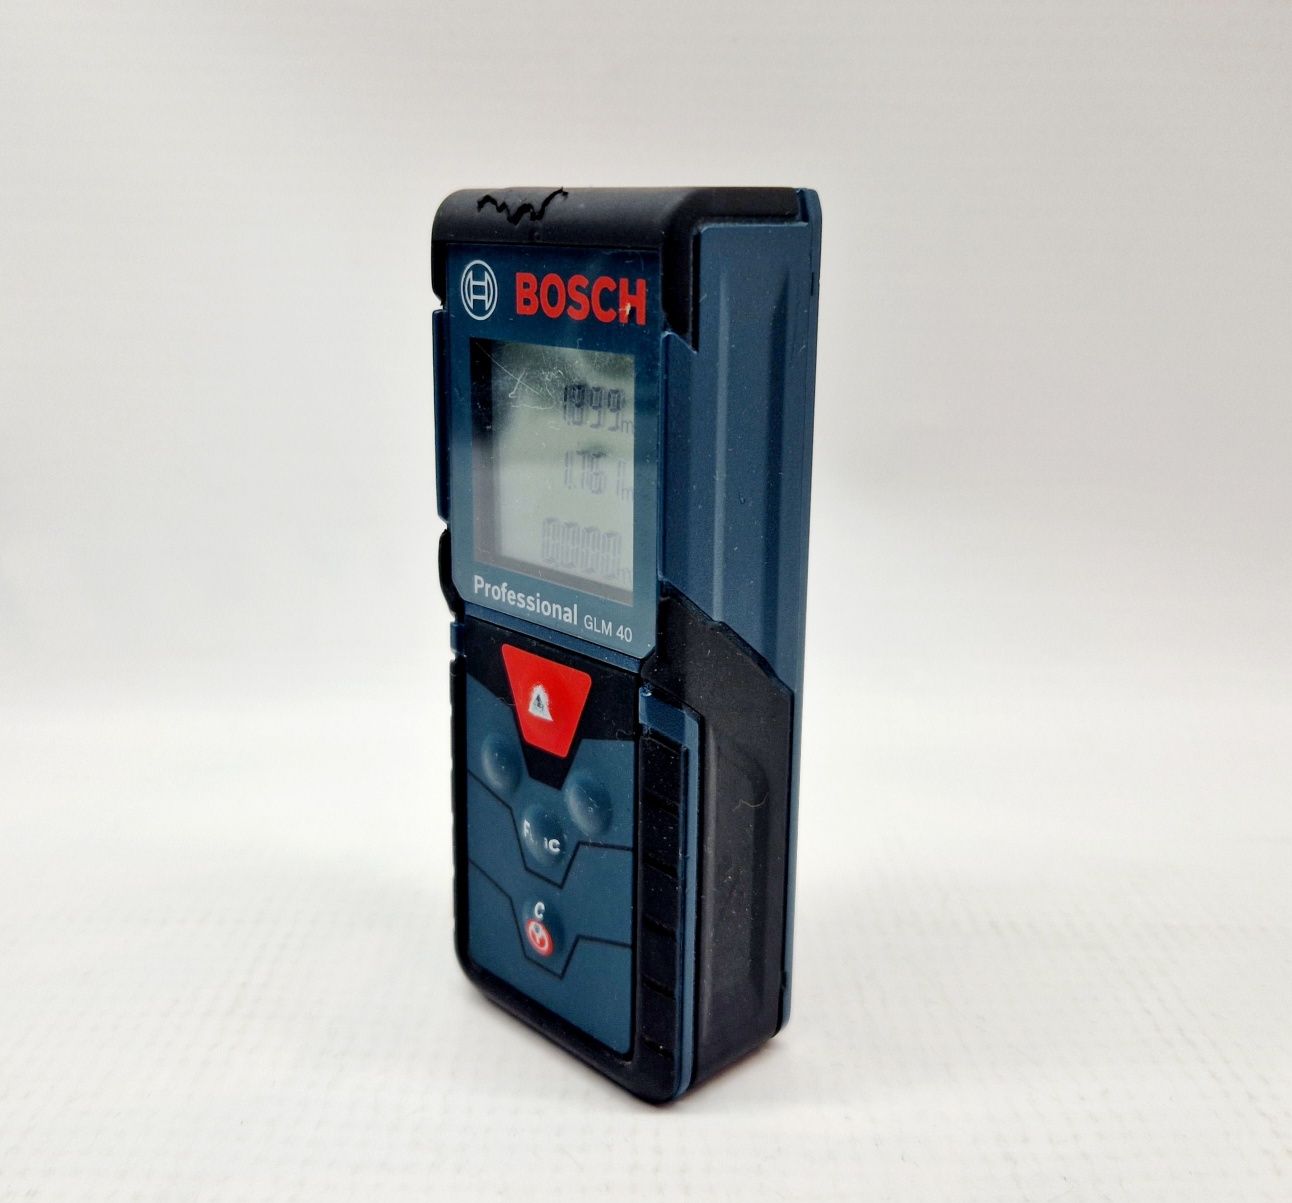 Dalmierz laserowy Bosch Professional GLM40, Komis Jasło Czackiego